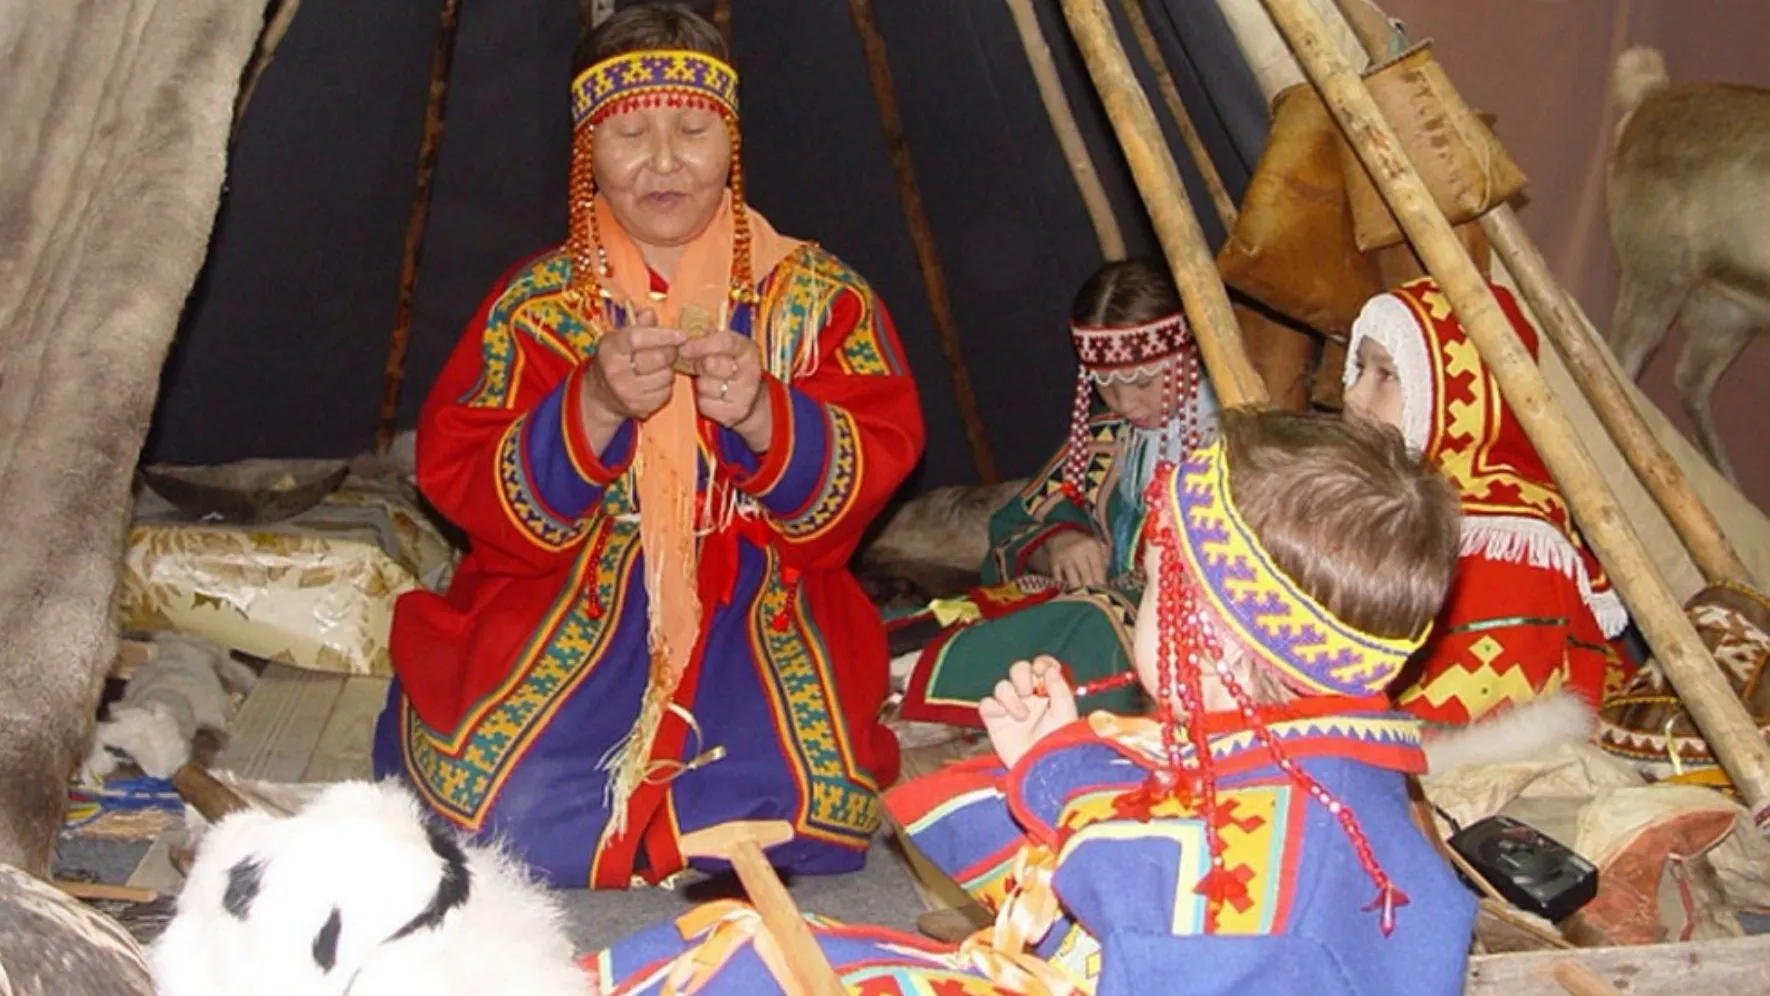 Гранты губернатора Ямала помогут восстановить забытые традиции и ремесла народов Севера. Фото: департамент по делам КМНС ЯНАО